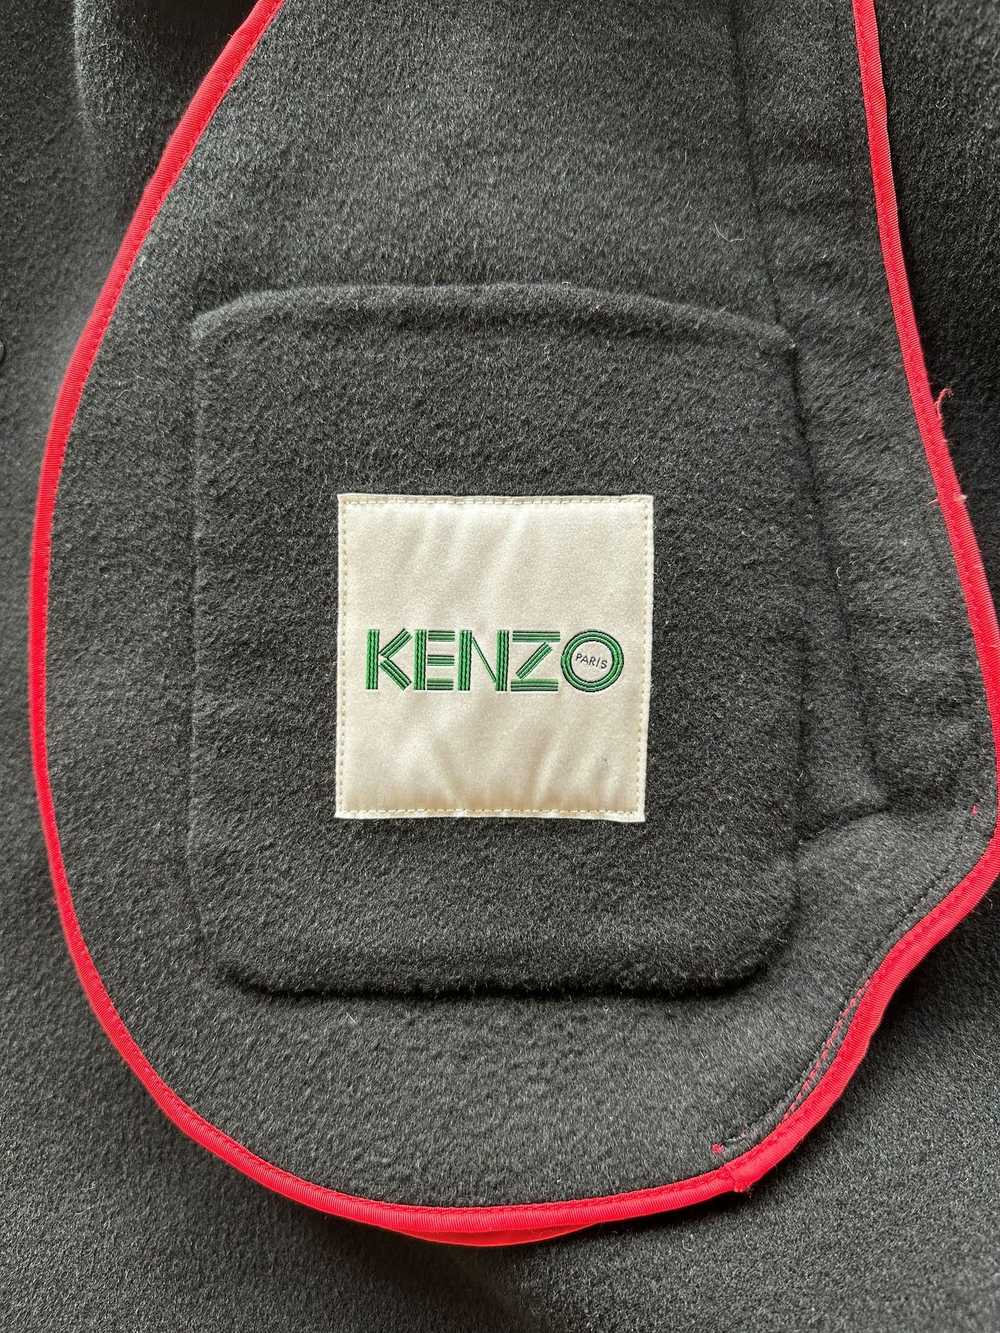 Kenzo Kenzo Wool Cashmere Overcoat - image 4